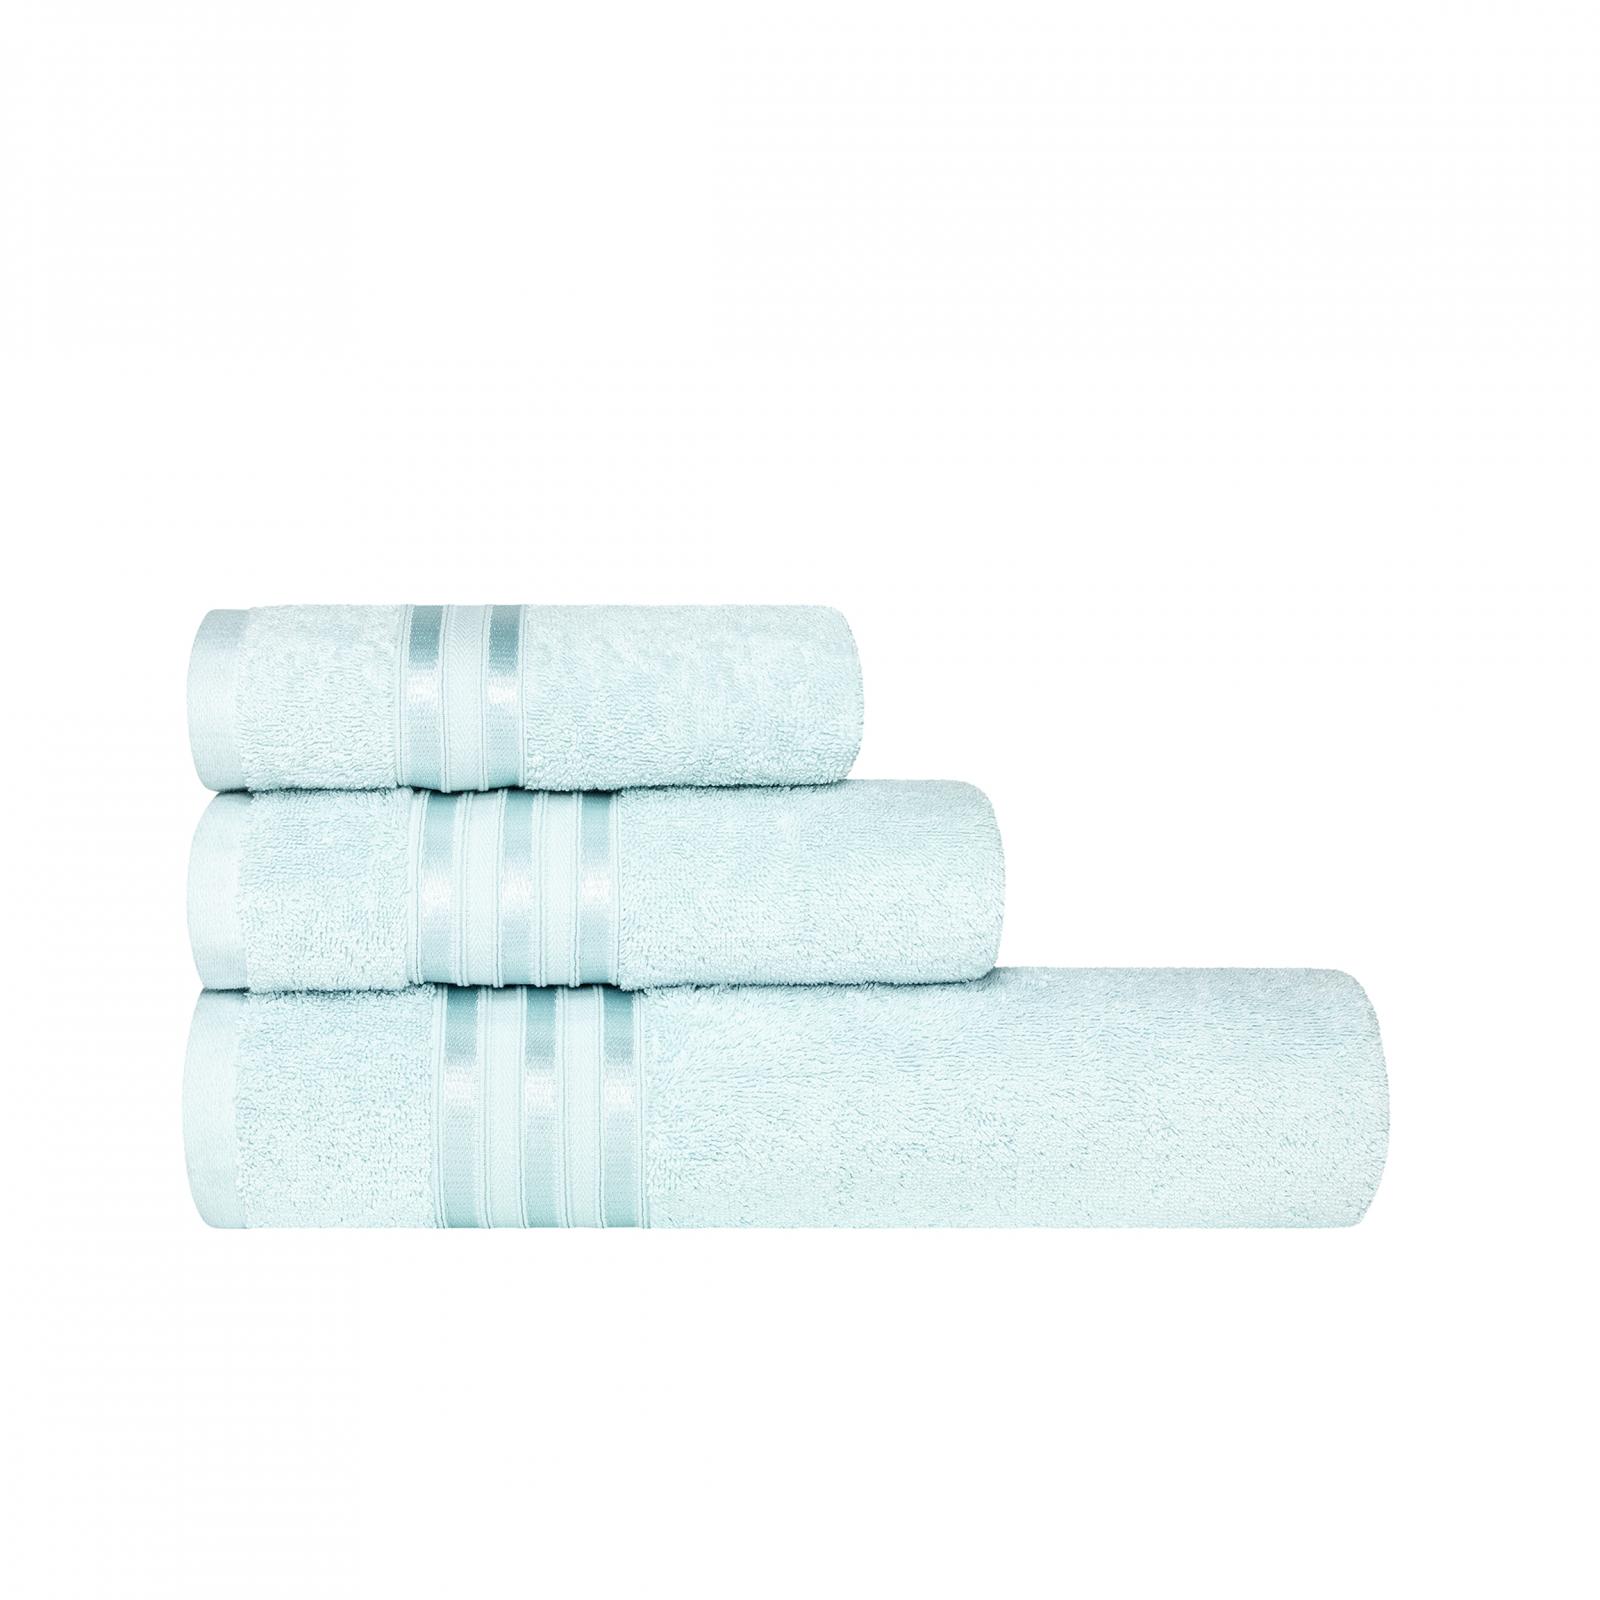 Полотенце Togas Аркадия голубое 40х60 см полотенце togas миа бел экру 40х60